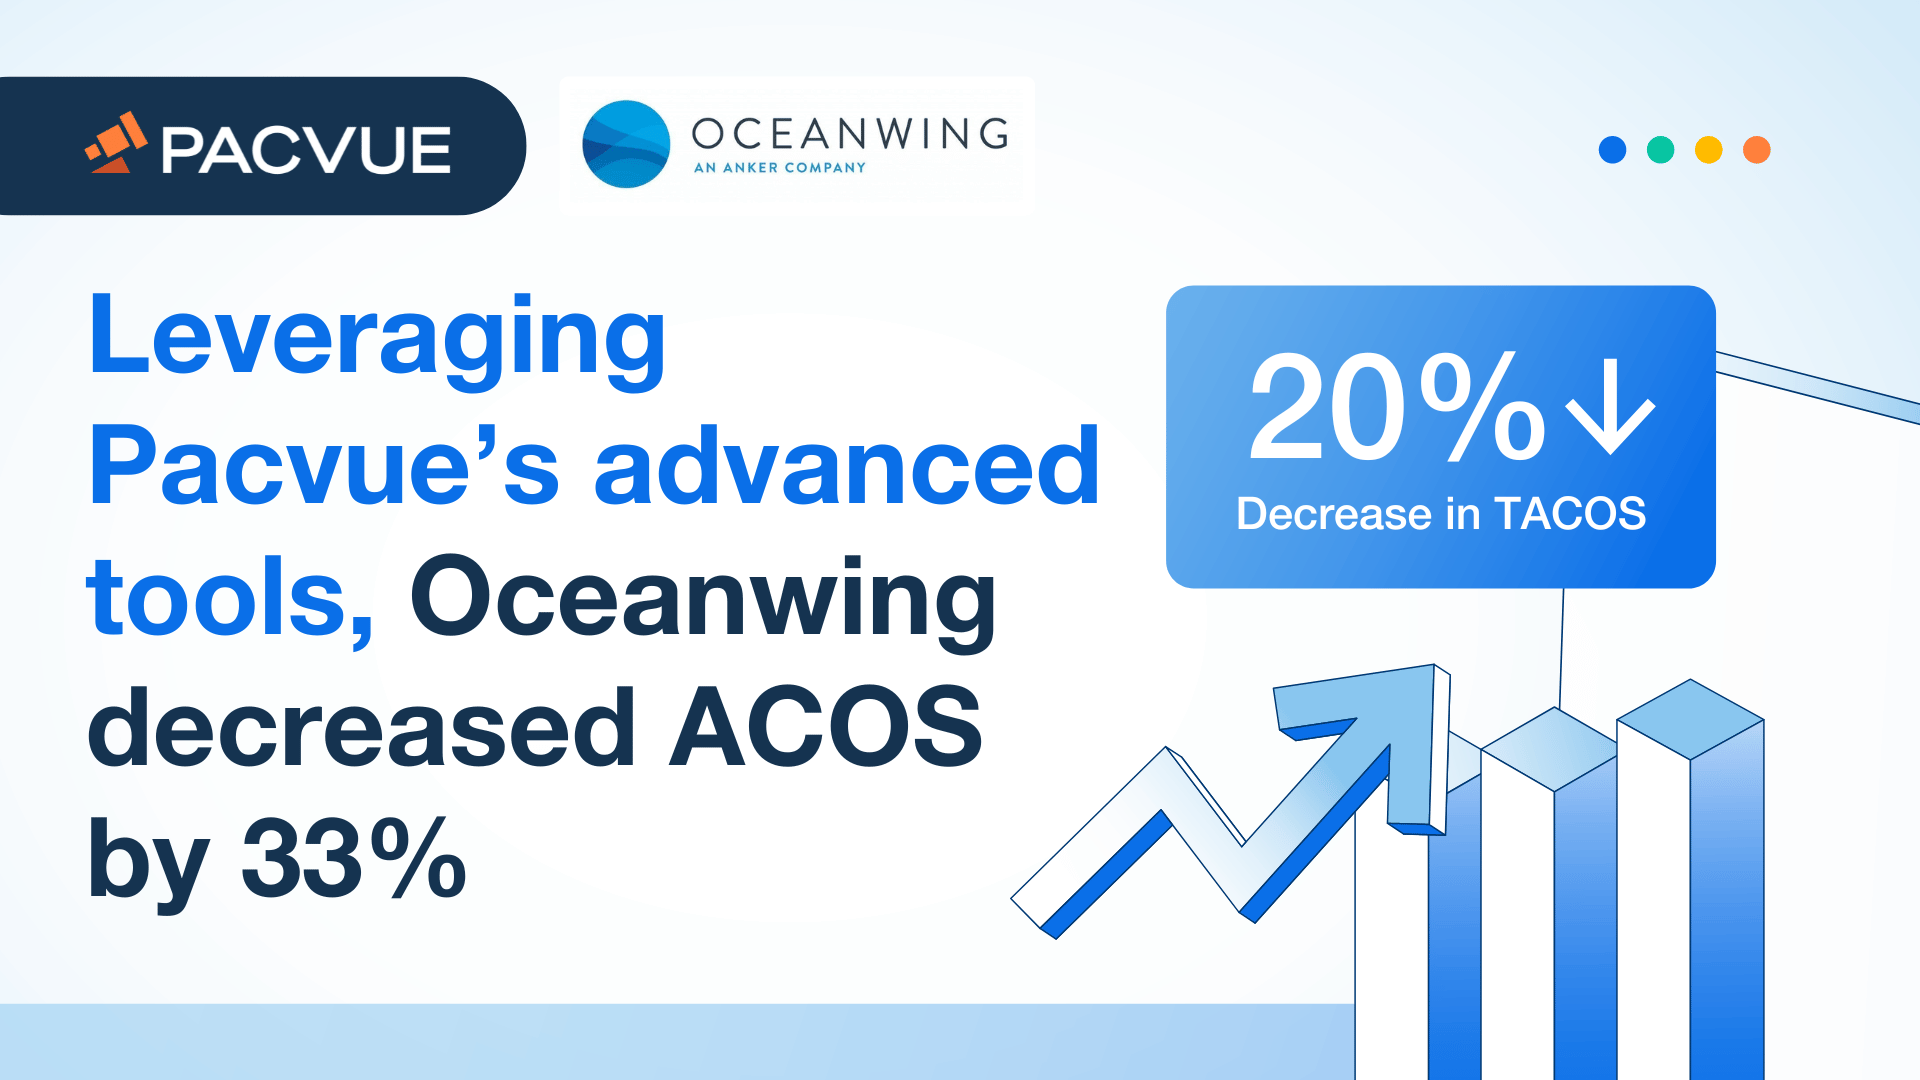 Sfruttando gli strumenti avanzati di Pacvue, Oceanwing ha ridotto gli ACOS del 33%.